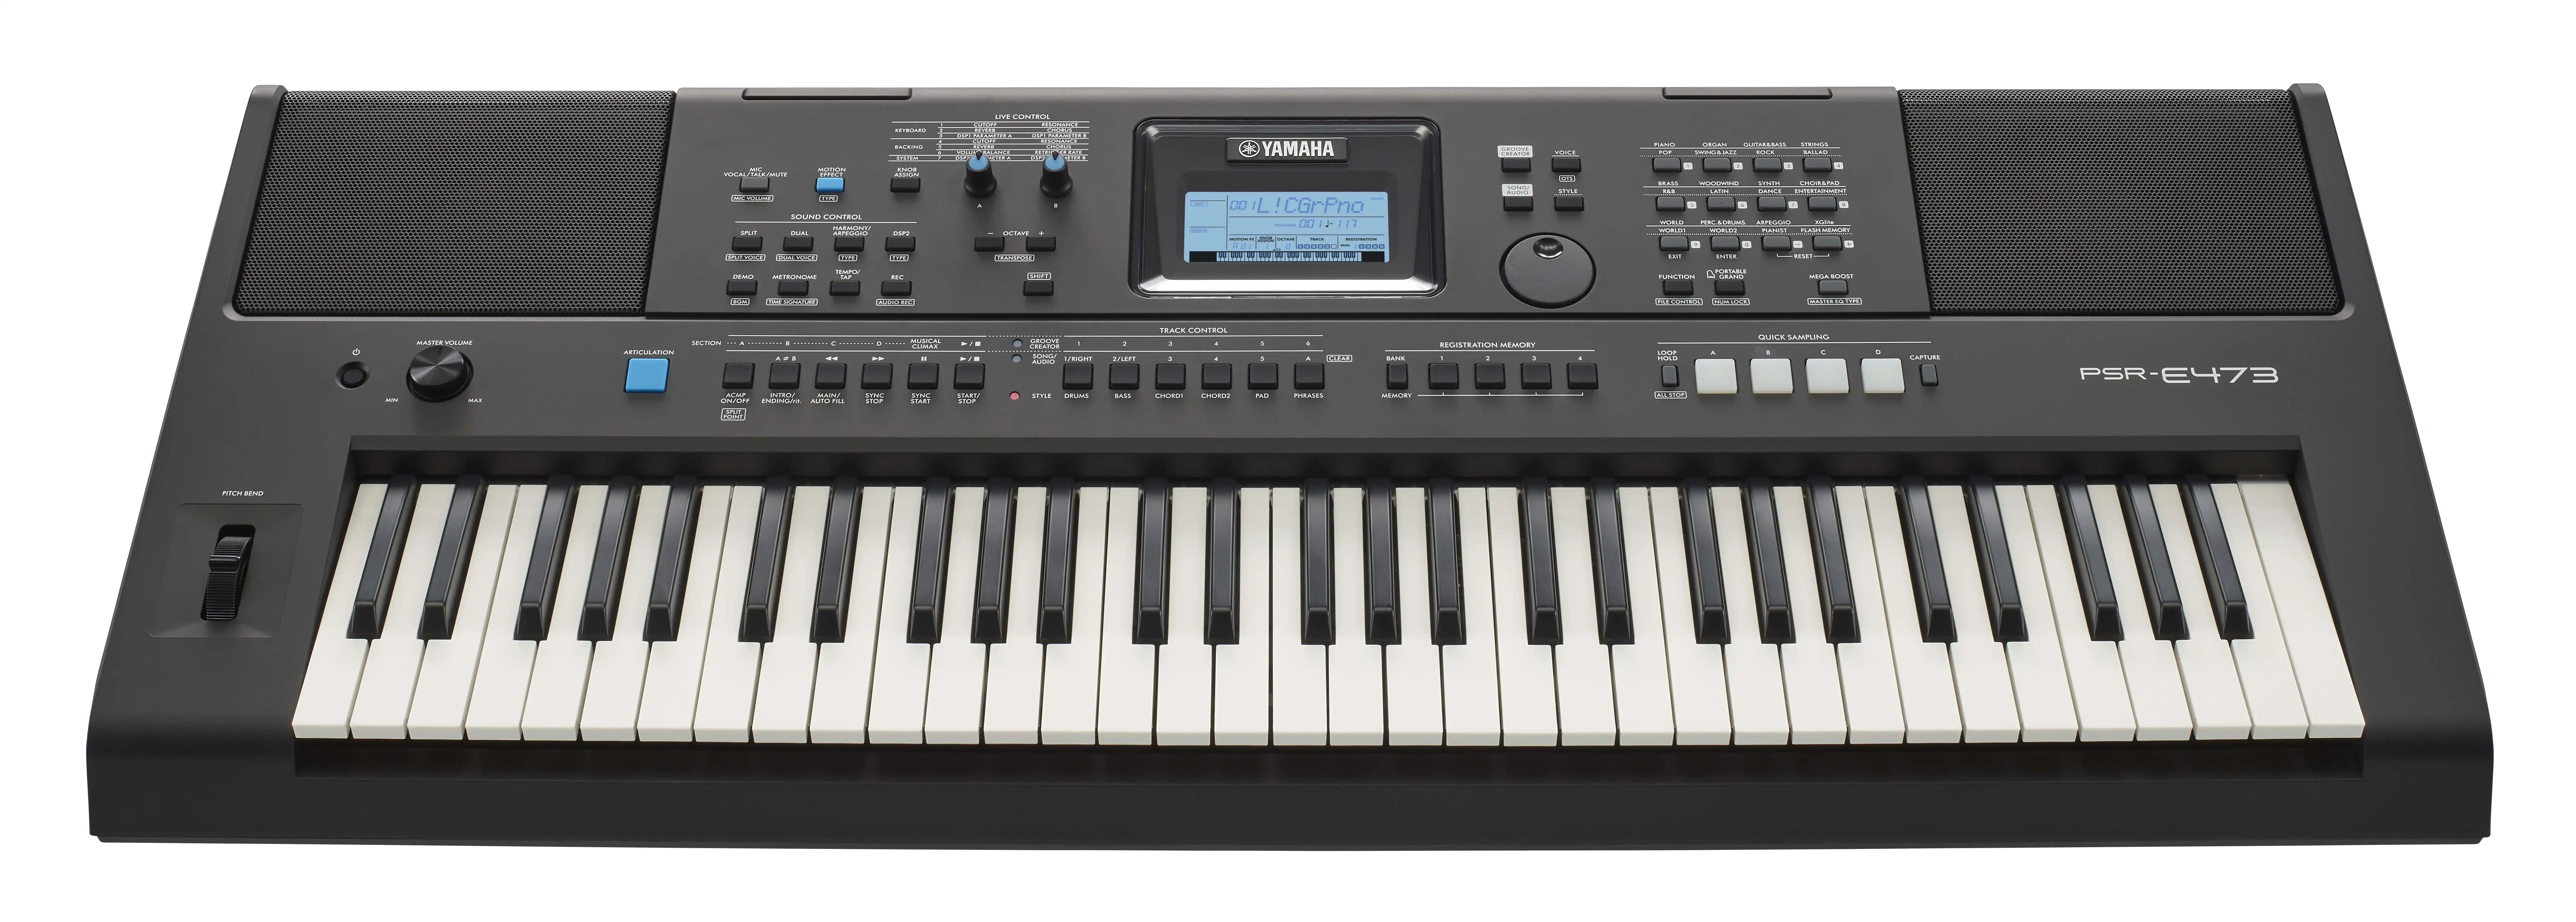 Yamaha PSR-E-473 Keyboard